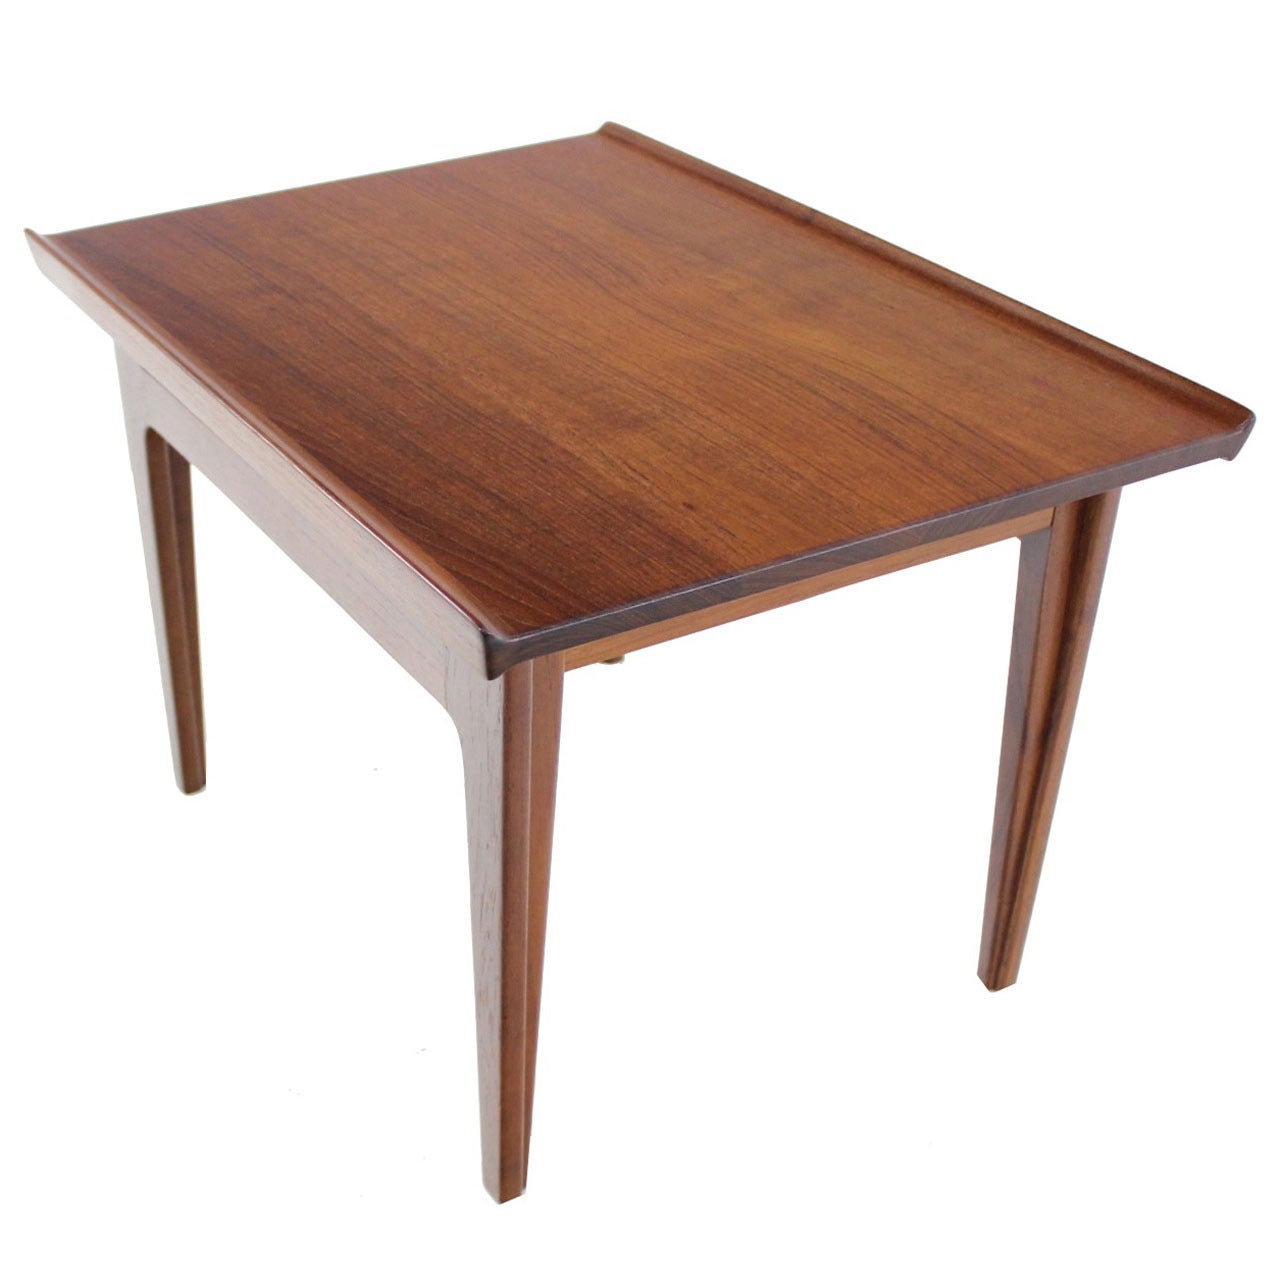 Danish Modern Solid Teak Side Table Designed by Finn Juhl